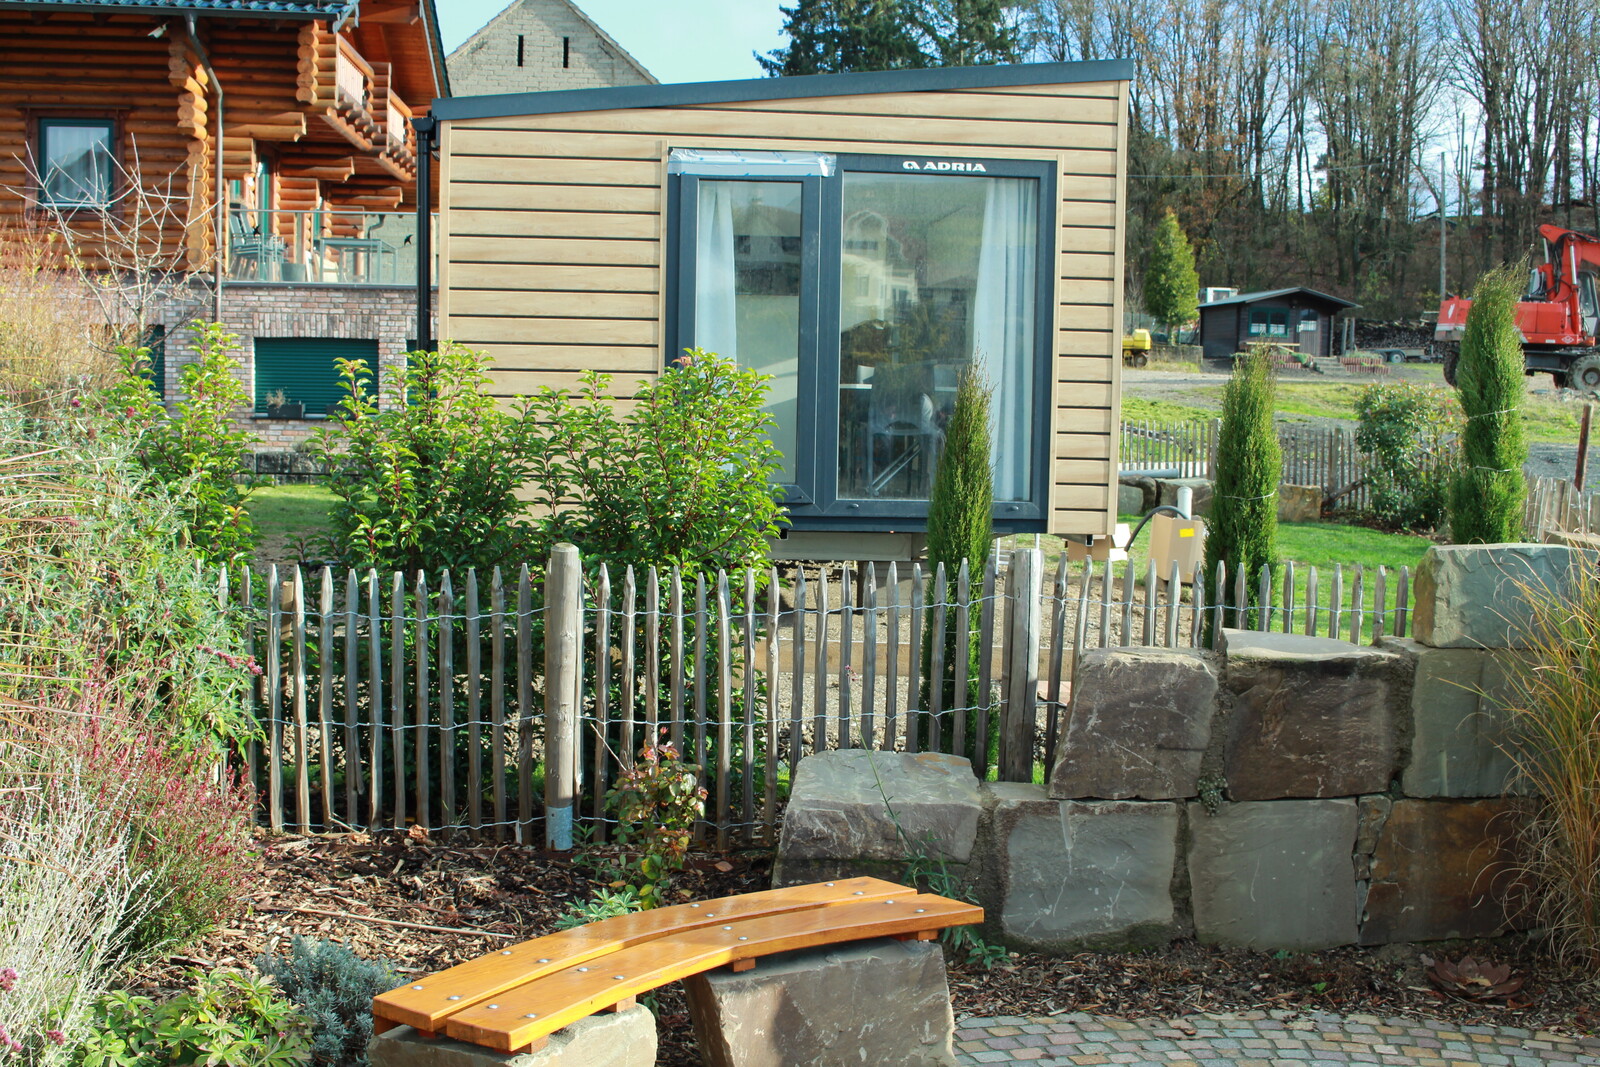 In der Gemeinde Kall in NRW hat die ZWST ähnliche Häuser wie im Ahrtal (Foto) errichtet